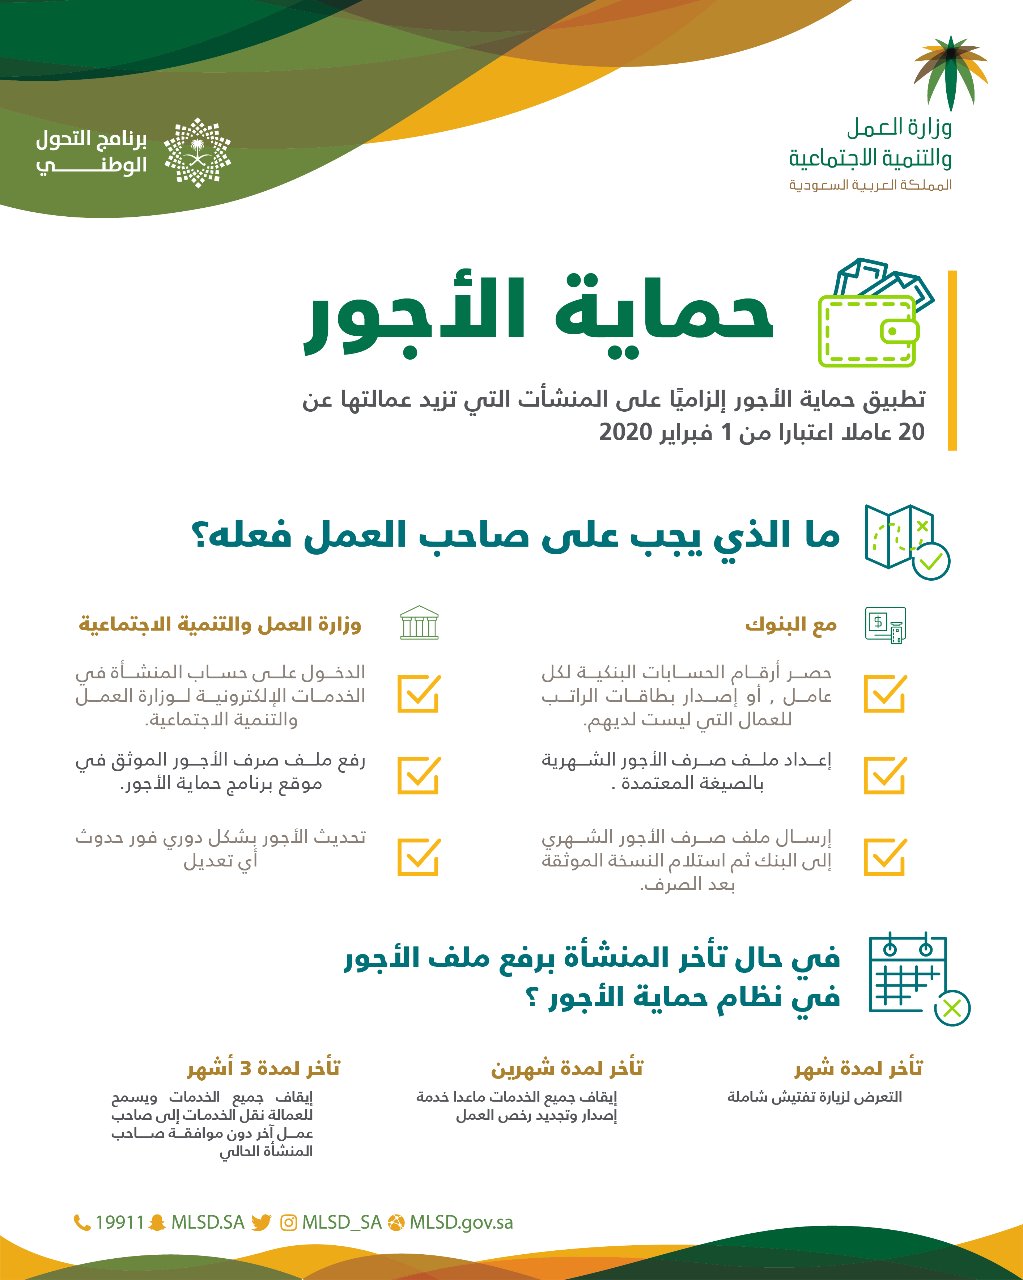 العمالة السعودية: تنفيذ المرحلة الرابعة عشرة من برنامج حماية الأجور فبراير 2020 - معلومات مباشر